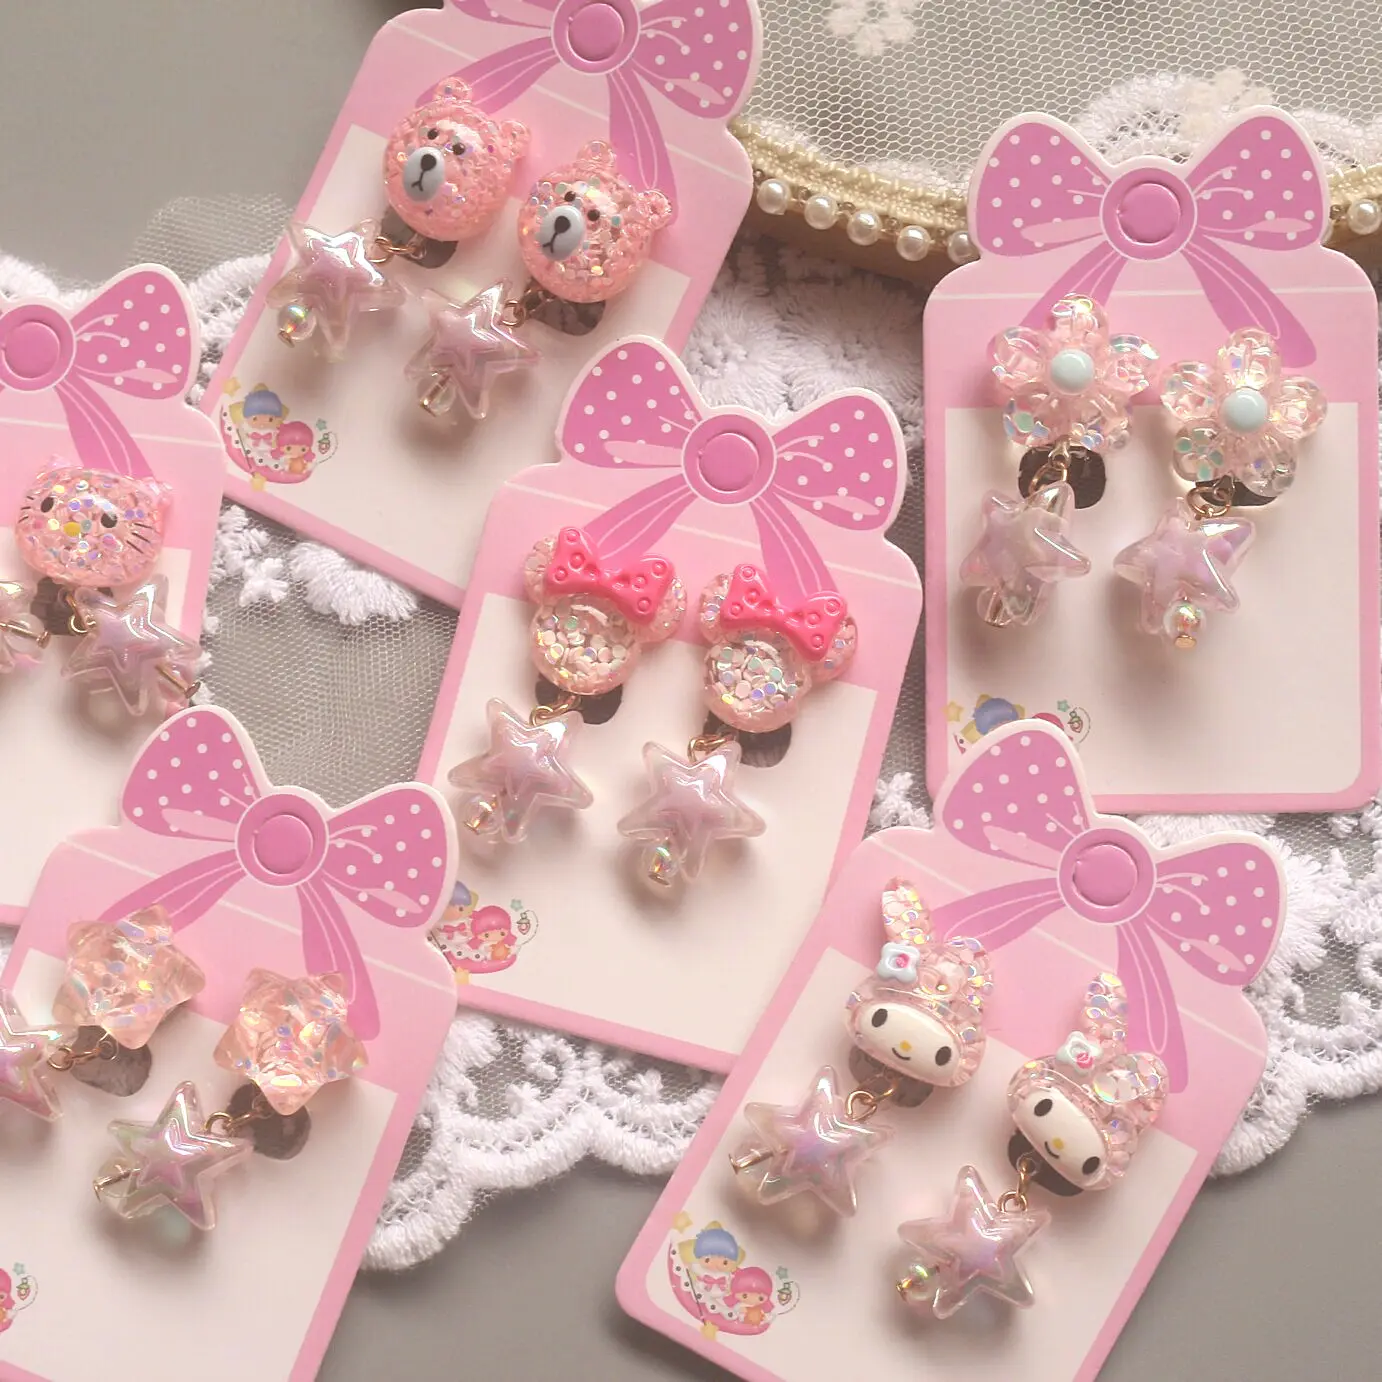 GT No Pierced Children Earrings Cute Animals Cats Flowers Stars Bear Girls Jewelry Clip on Earrings for Kids